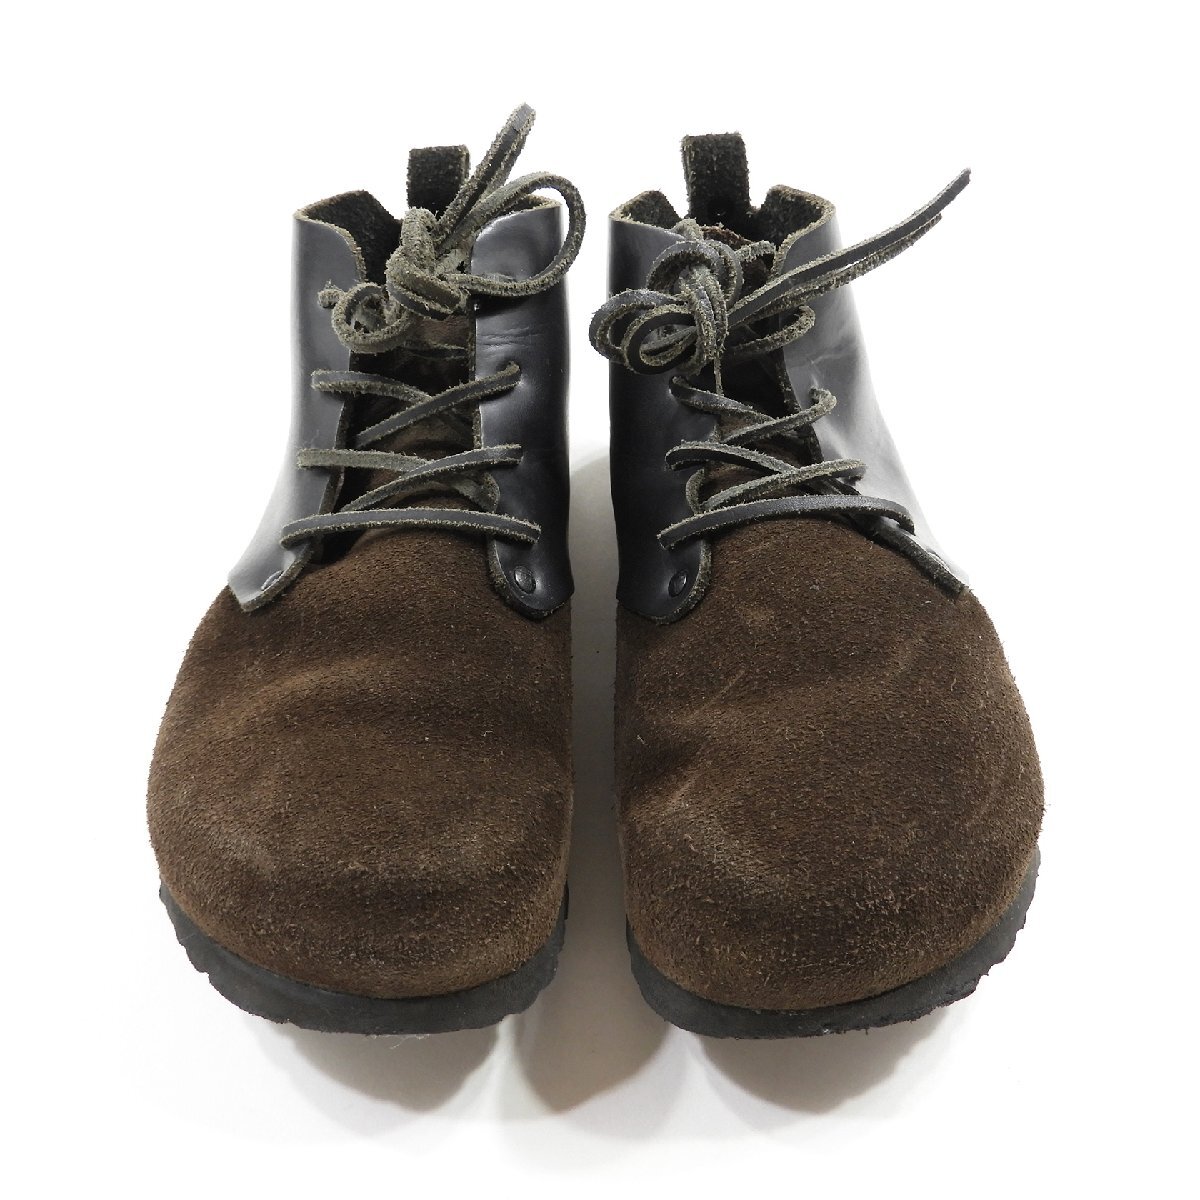 BIRKENSTOCK ビルケンシュトック モンタナ シューズ スウェード size 39 #17650 スエード レザー 本革 靴_画像2